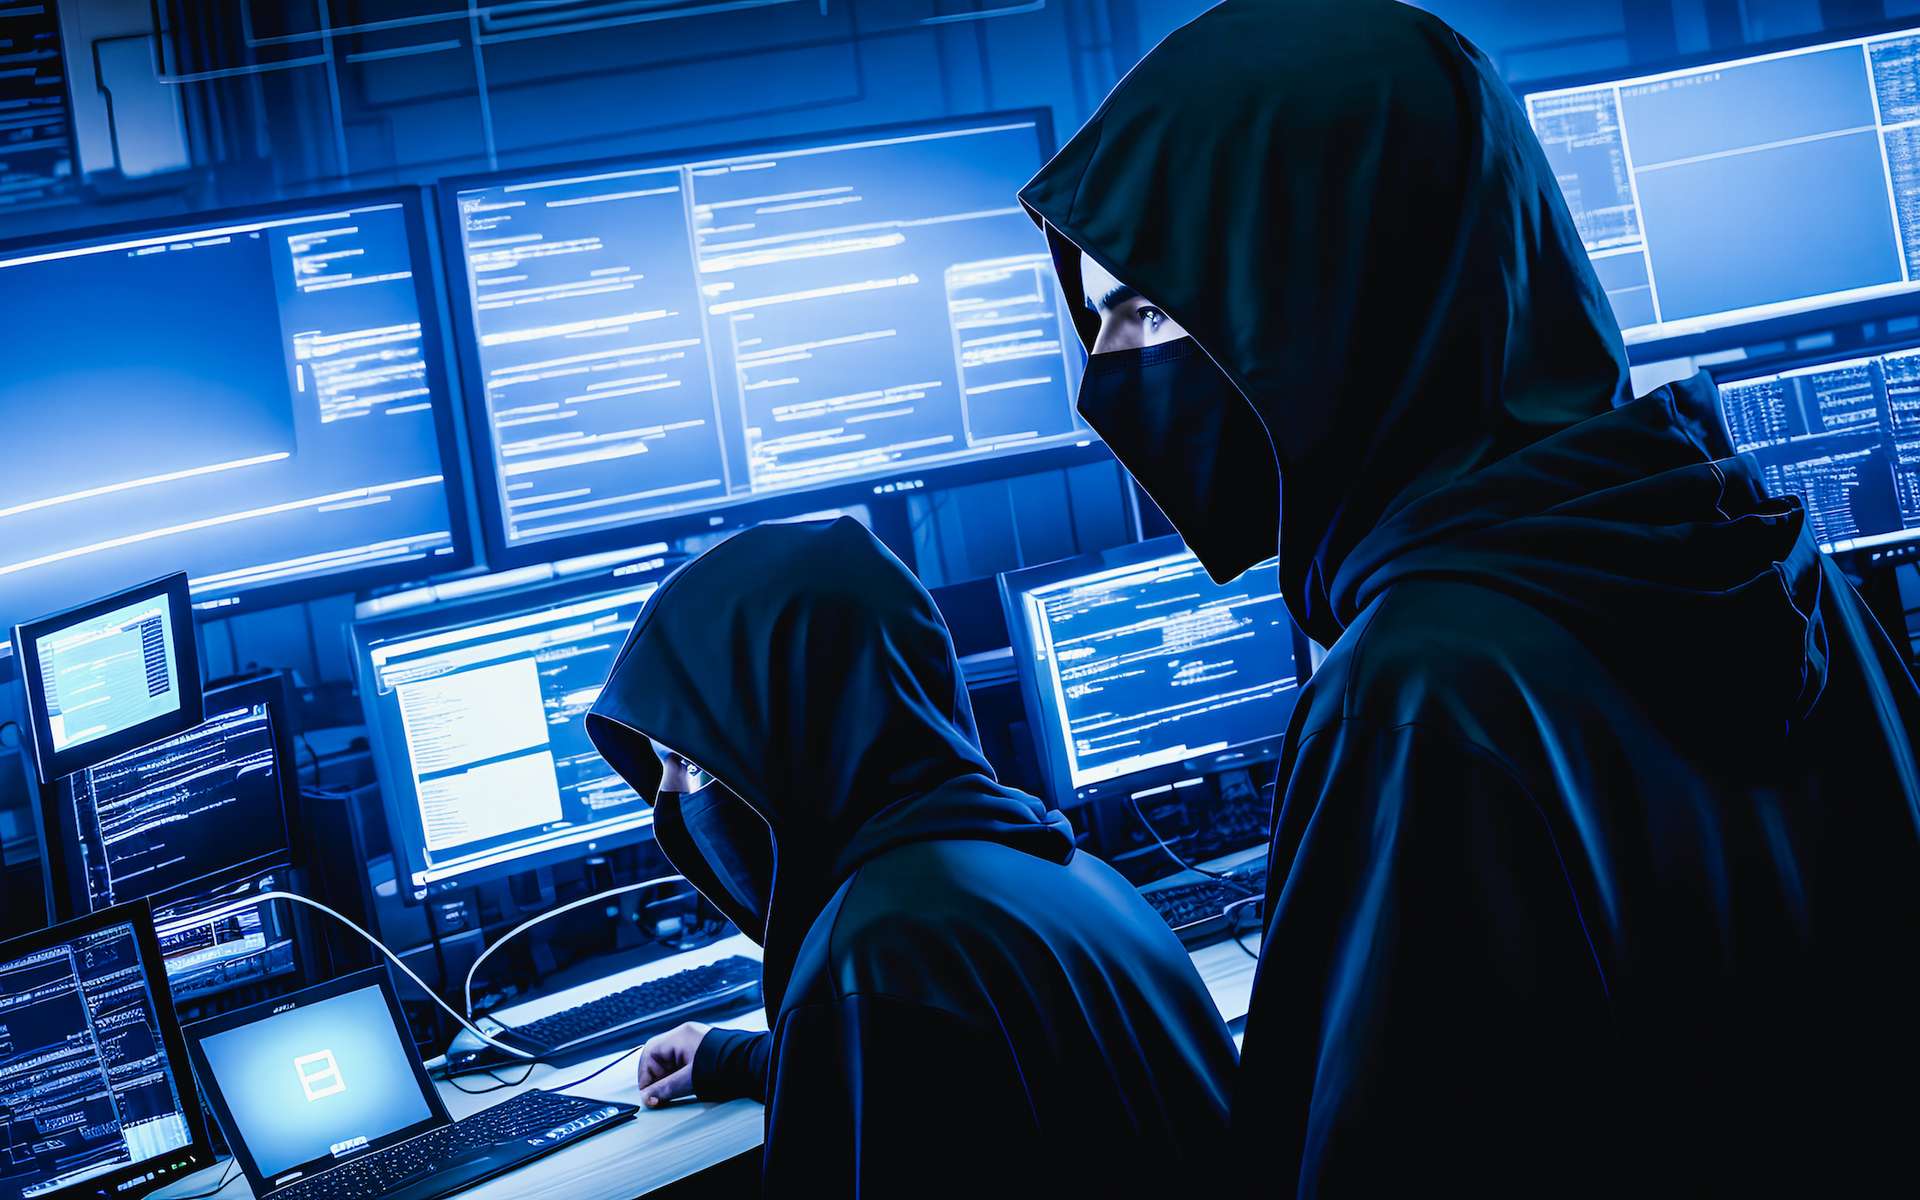 ce67a1743f_50212605_hackers-cybercriminels-cybergang.jpg